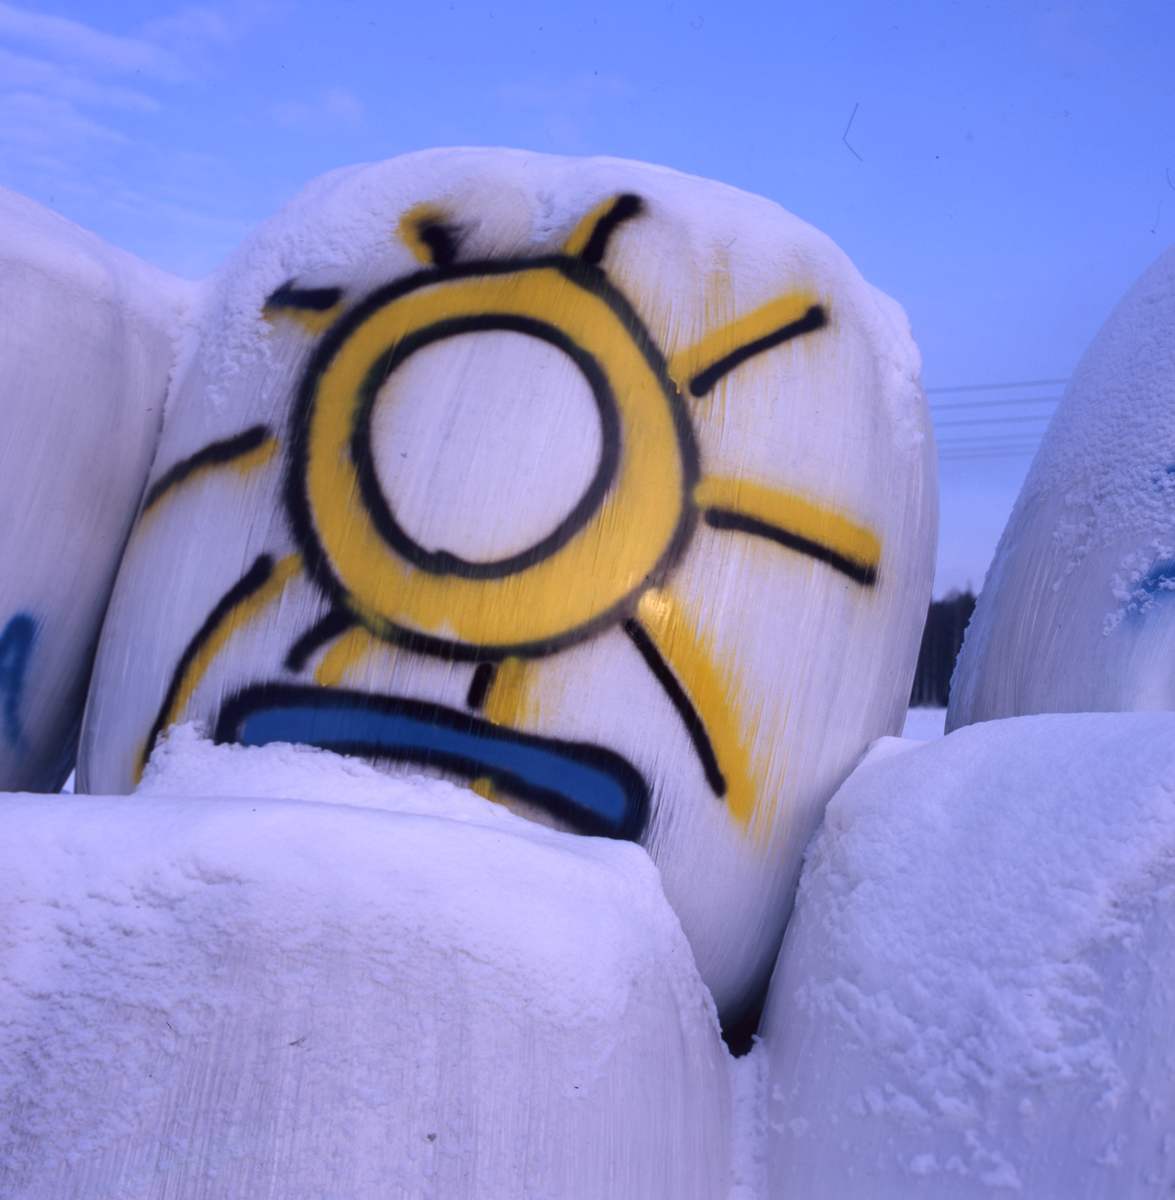 Inplastade ensilagebalar täckta med snö. På en av dom har någon ritat en stor sol.